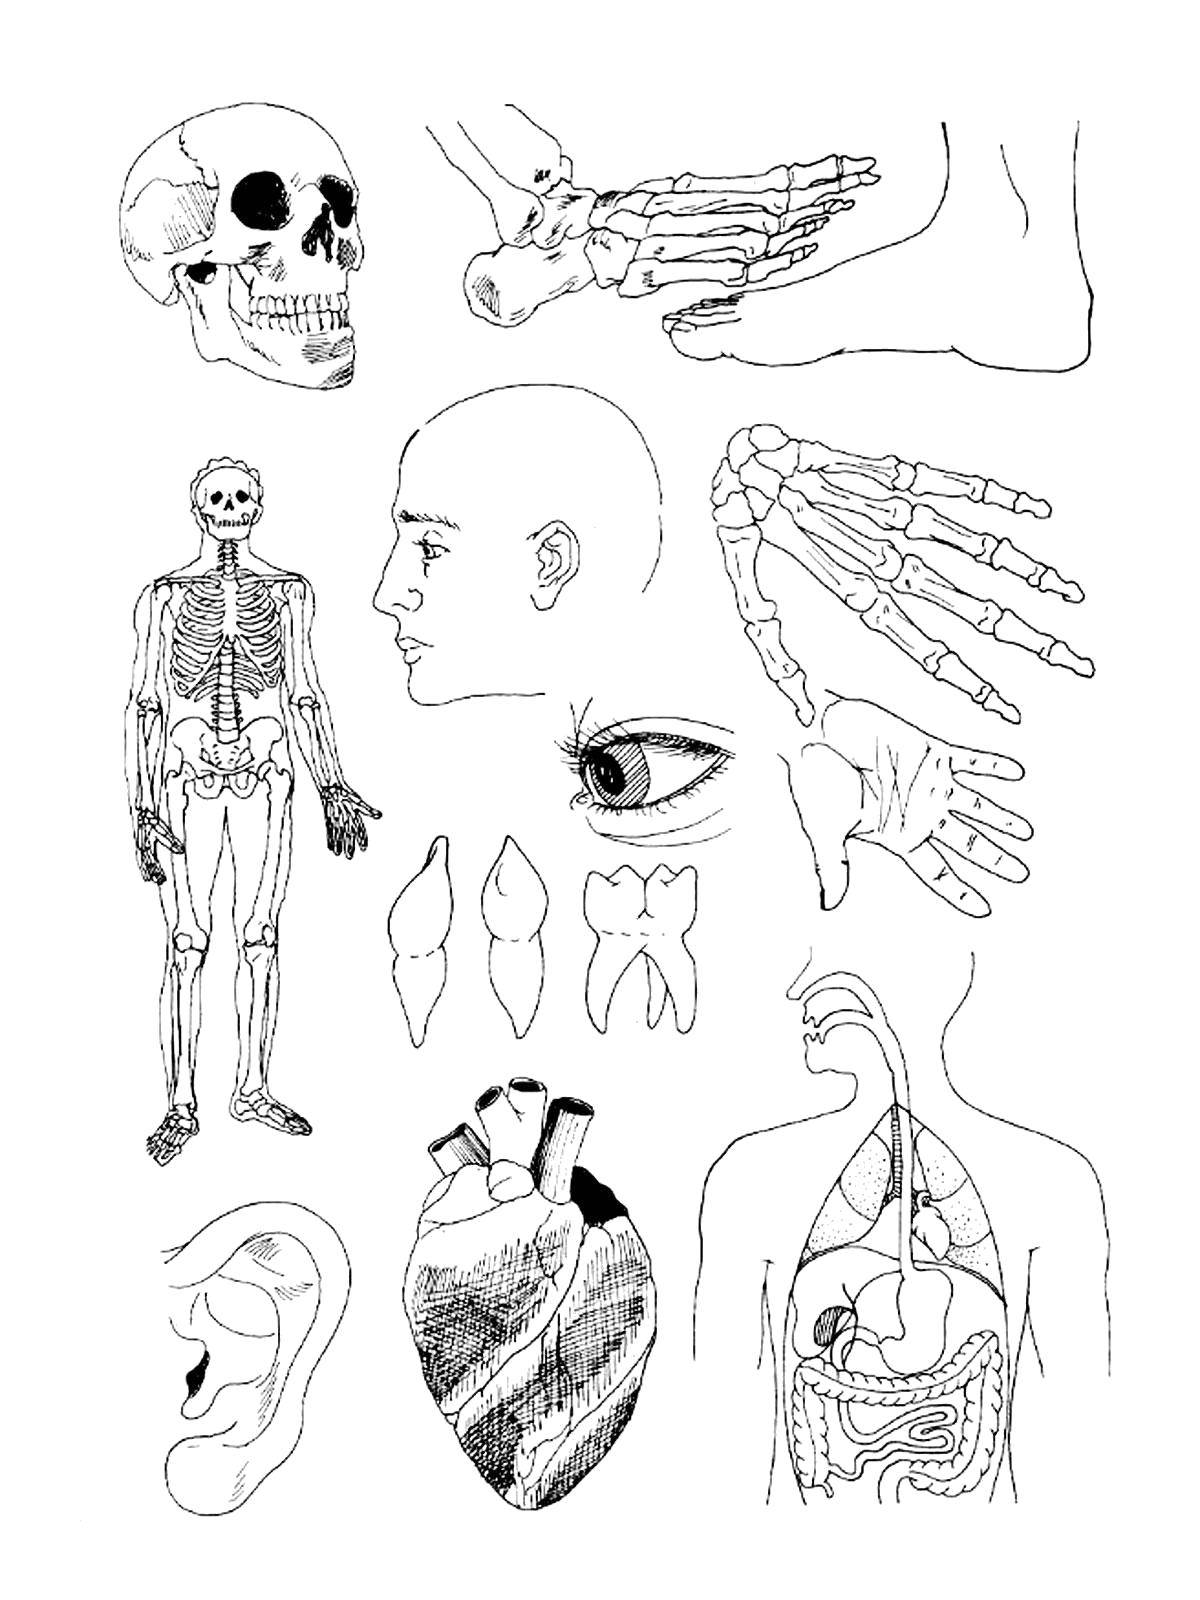 Раскраска изображения человека и его внутренних органов (человек)